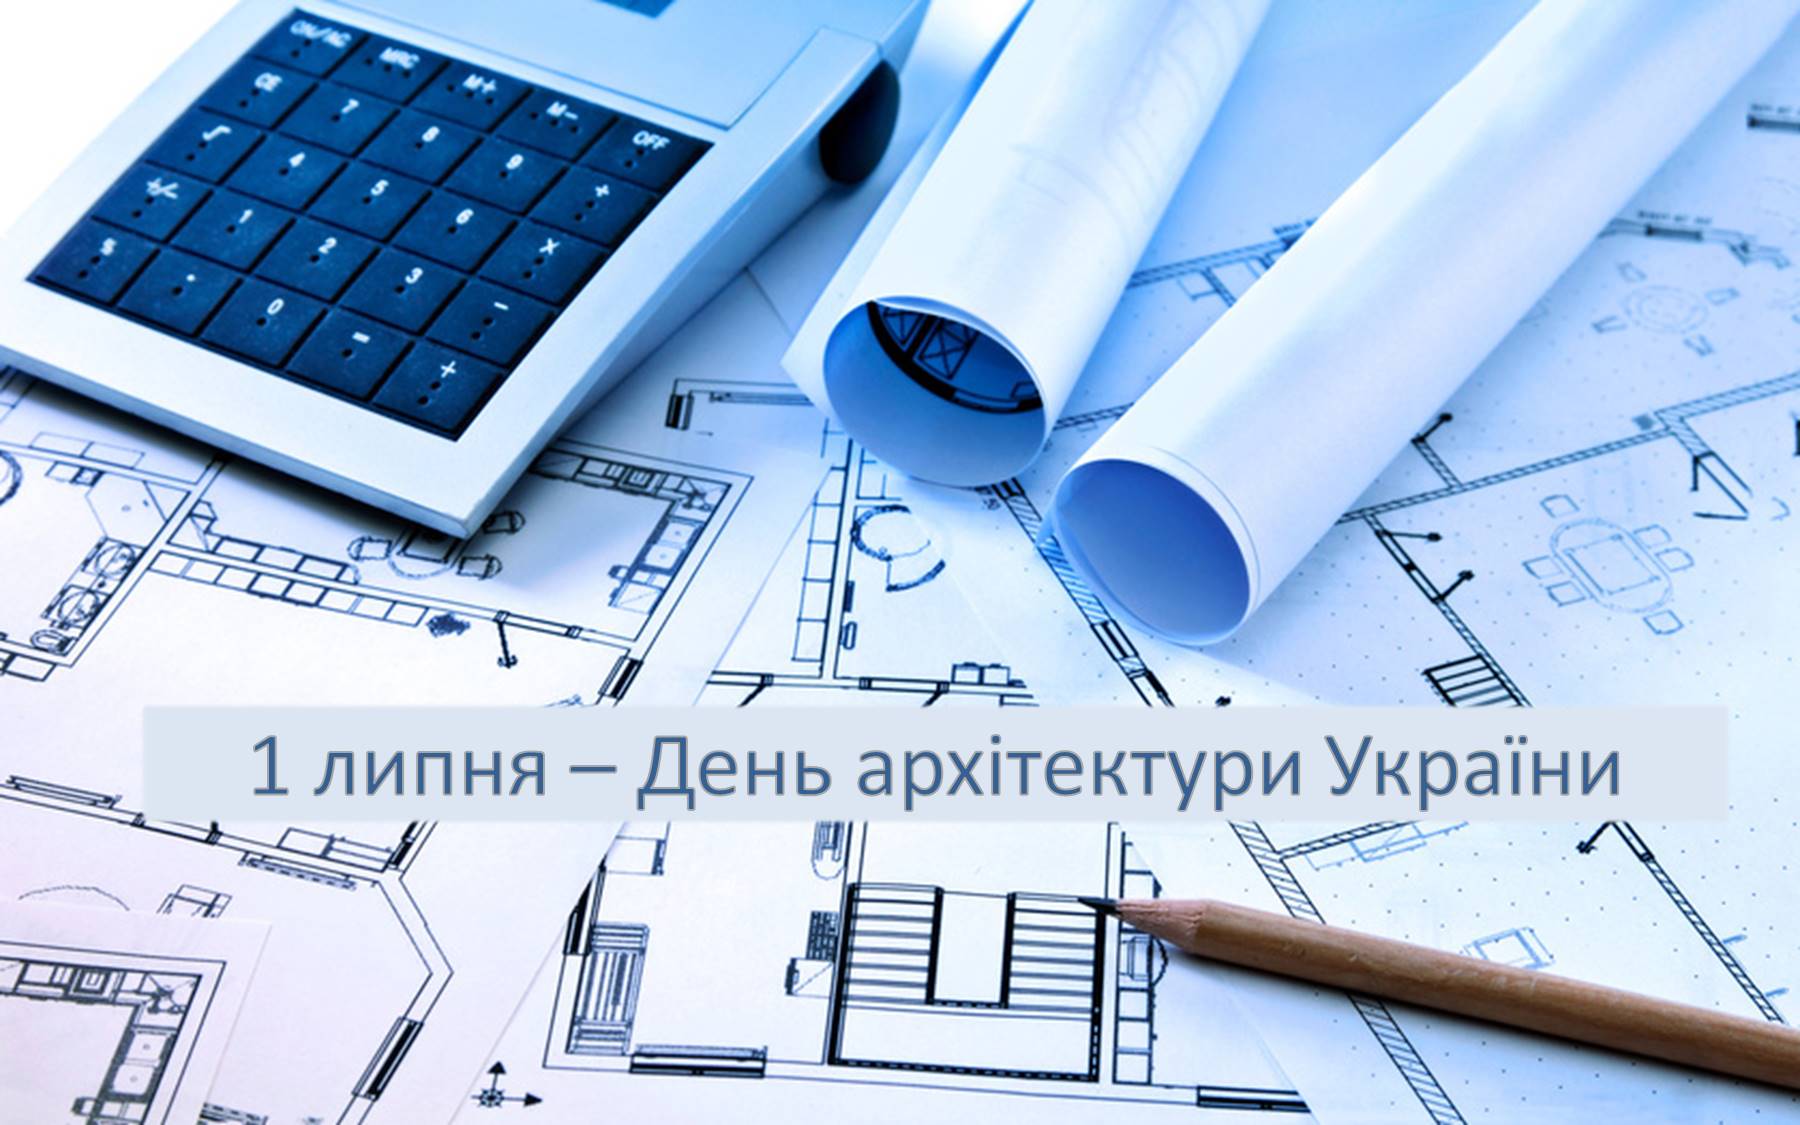 1 липня – День архітектури України